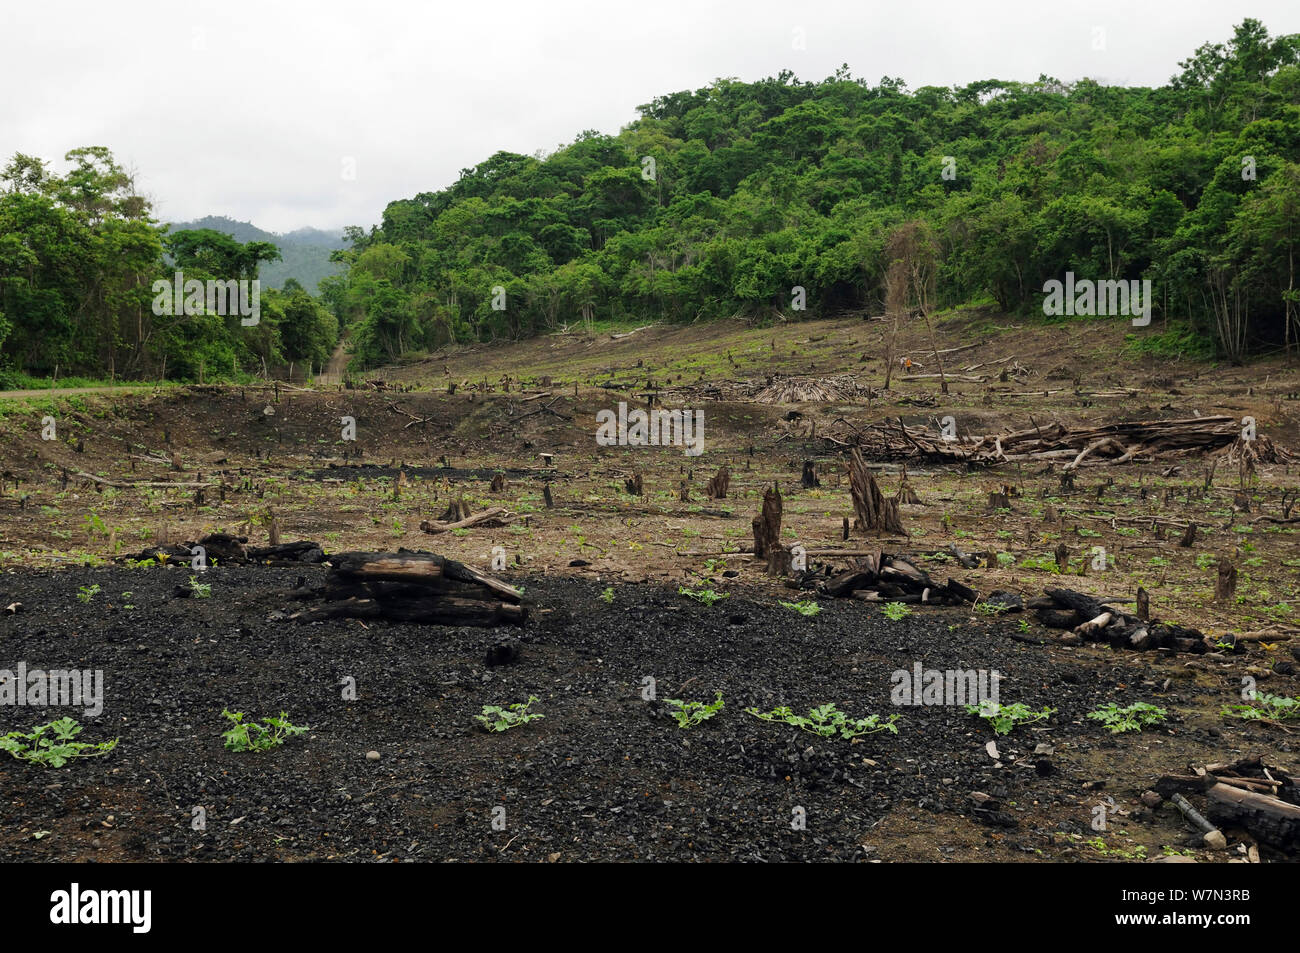 Jeu de forêt côtière pour l'agriculture de subsistance, Province de Manabi, Équateur. Février 2012. Banque D'Images